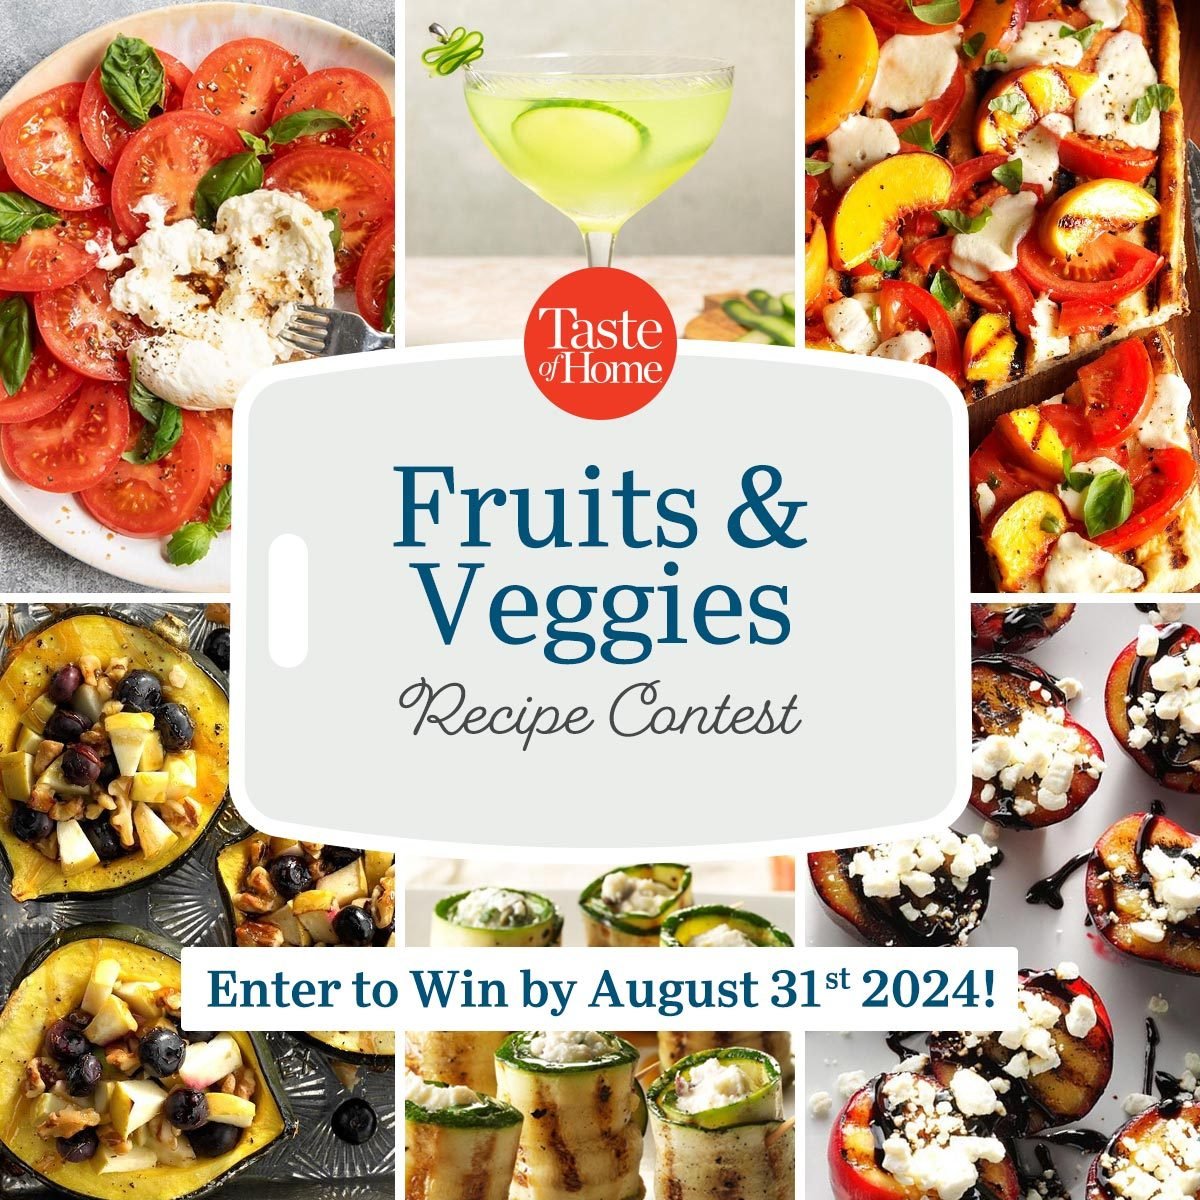 Fruits & Veggies Contest Announcement 2x3 Grid Ft 2